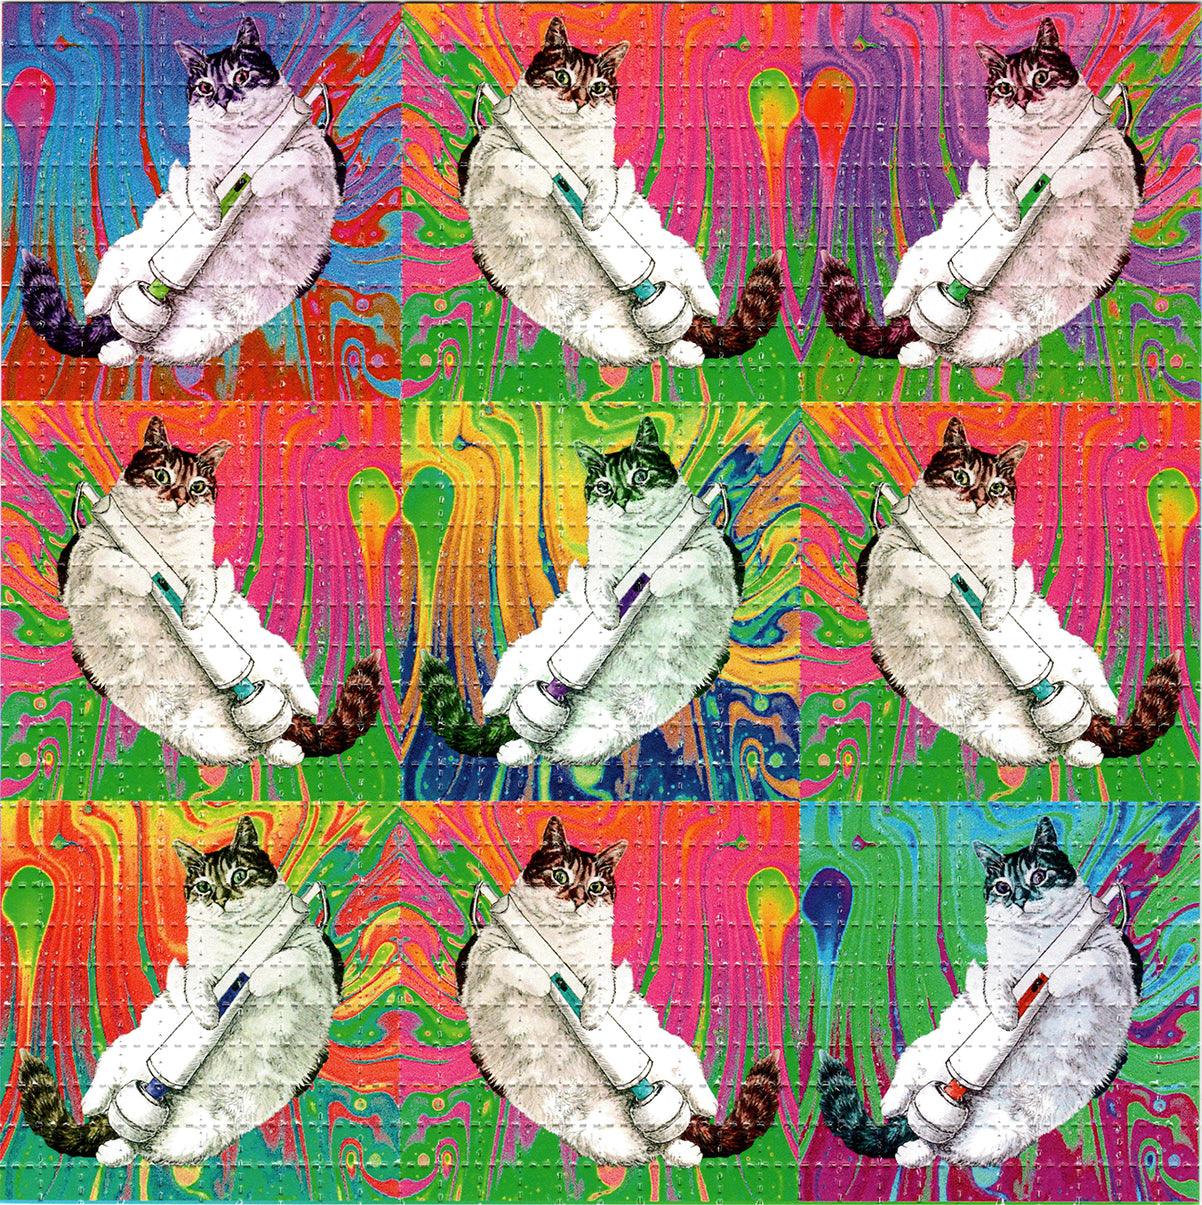 Kitty Love X9 LSD blotter art print